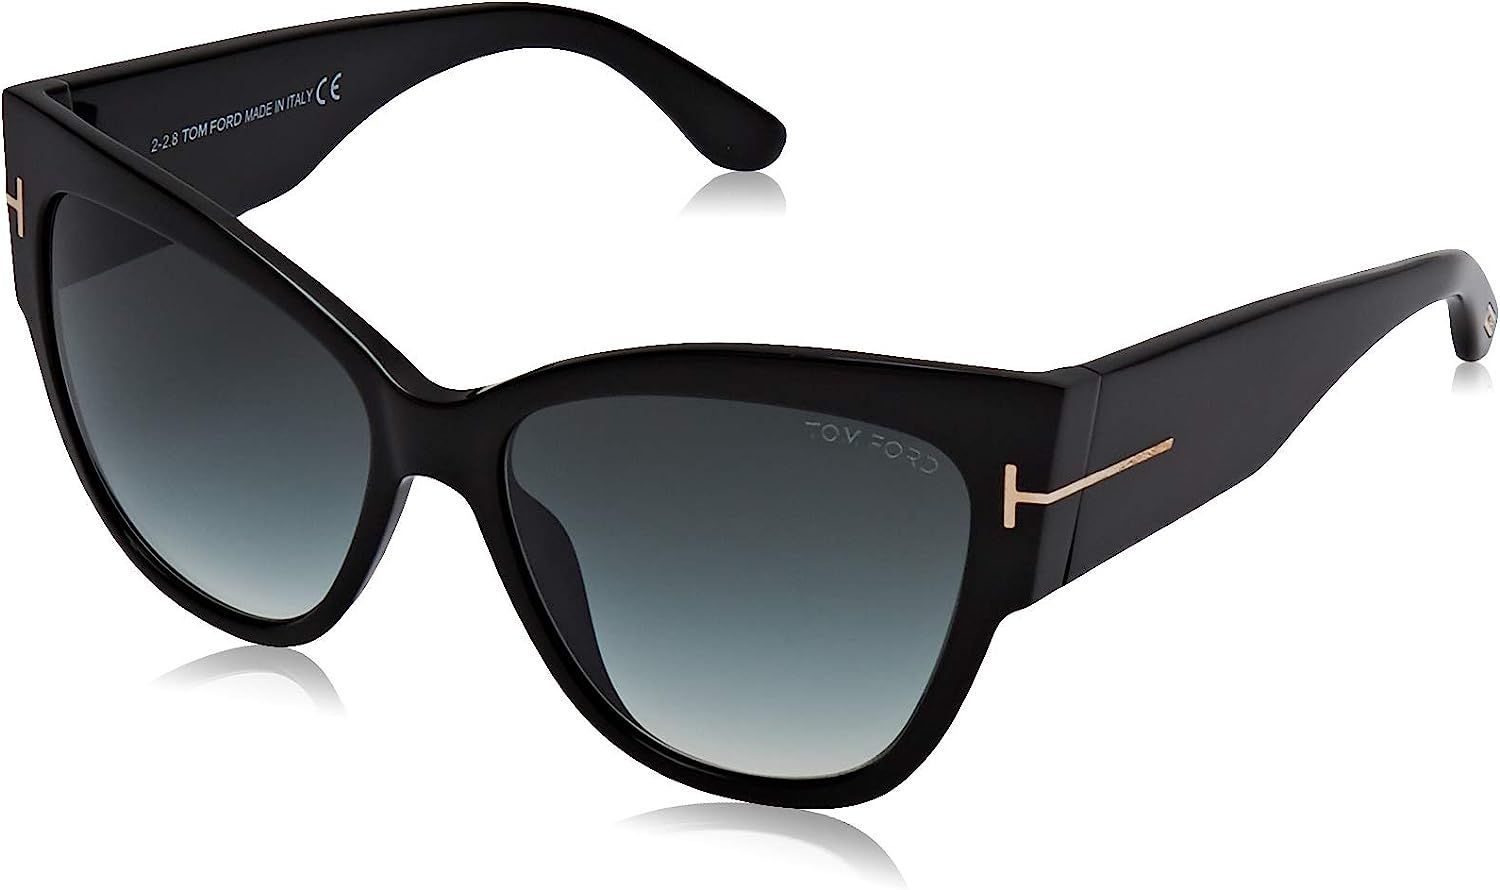 Tom Ford TF371 01B Black Anoushka Pilot Sunglasses Lens Category 2 Size 57mm | Amazon (US)